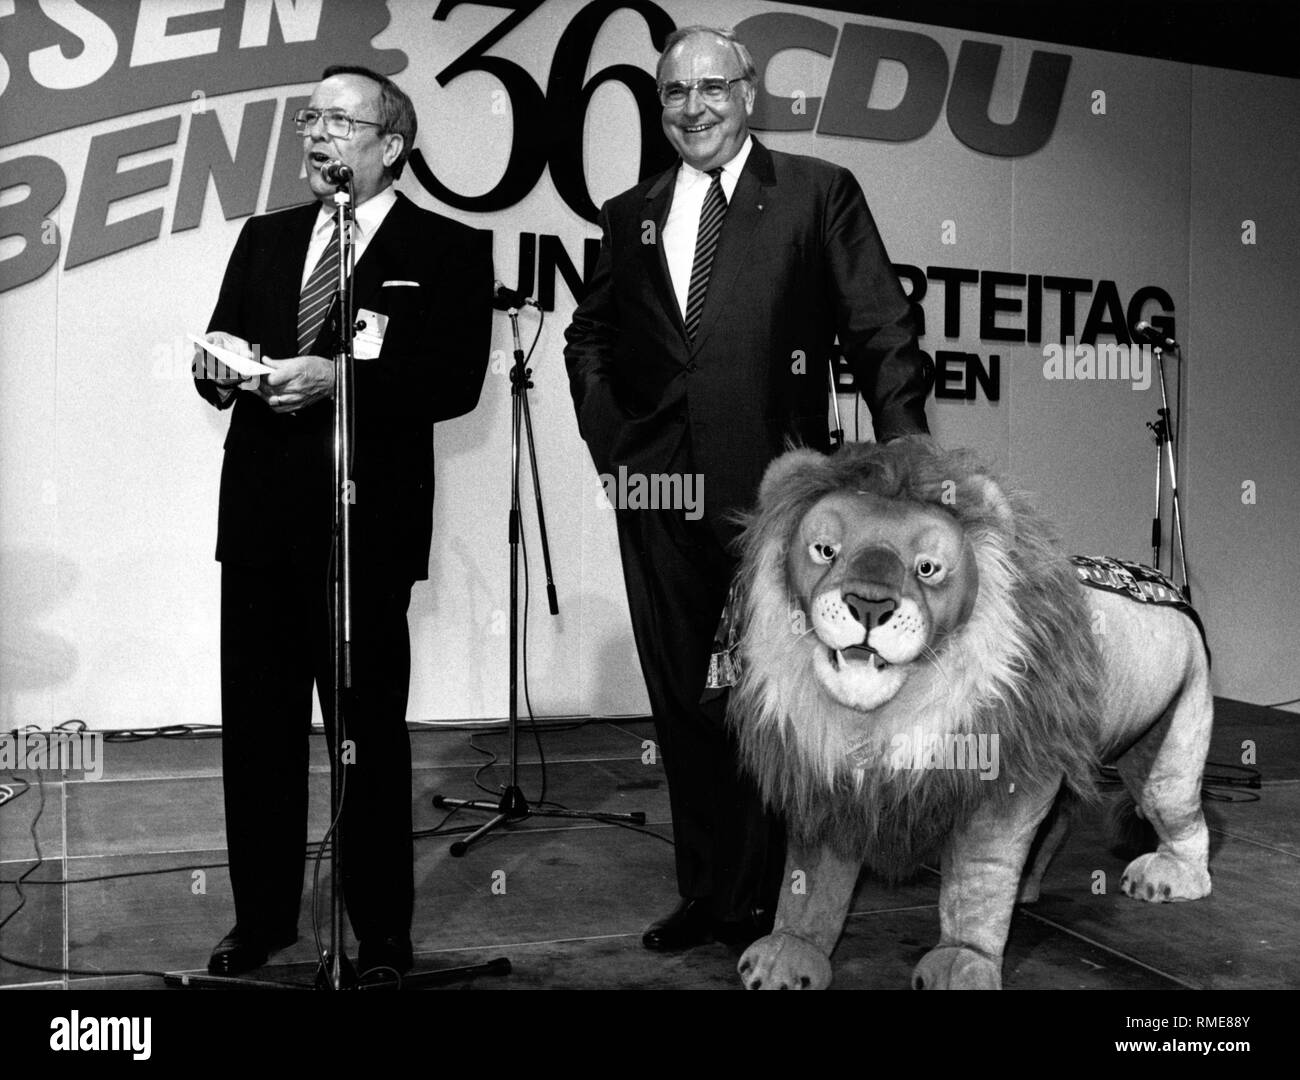 Au 36e congrès national de la CDU à Wiesbaden, Premier Ministre de la Hesse Walter Wallmann (l.) plus de mains pour le Chancelier Helmut Kohl un lion en peluche qui seront vendues aux enchères en faveur de Hannelore Kohl's foundation, Kuratorium ZNS. Banque D'Images